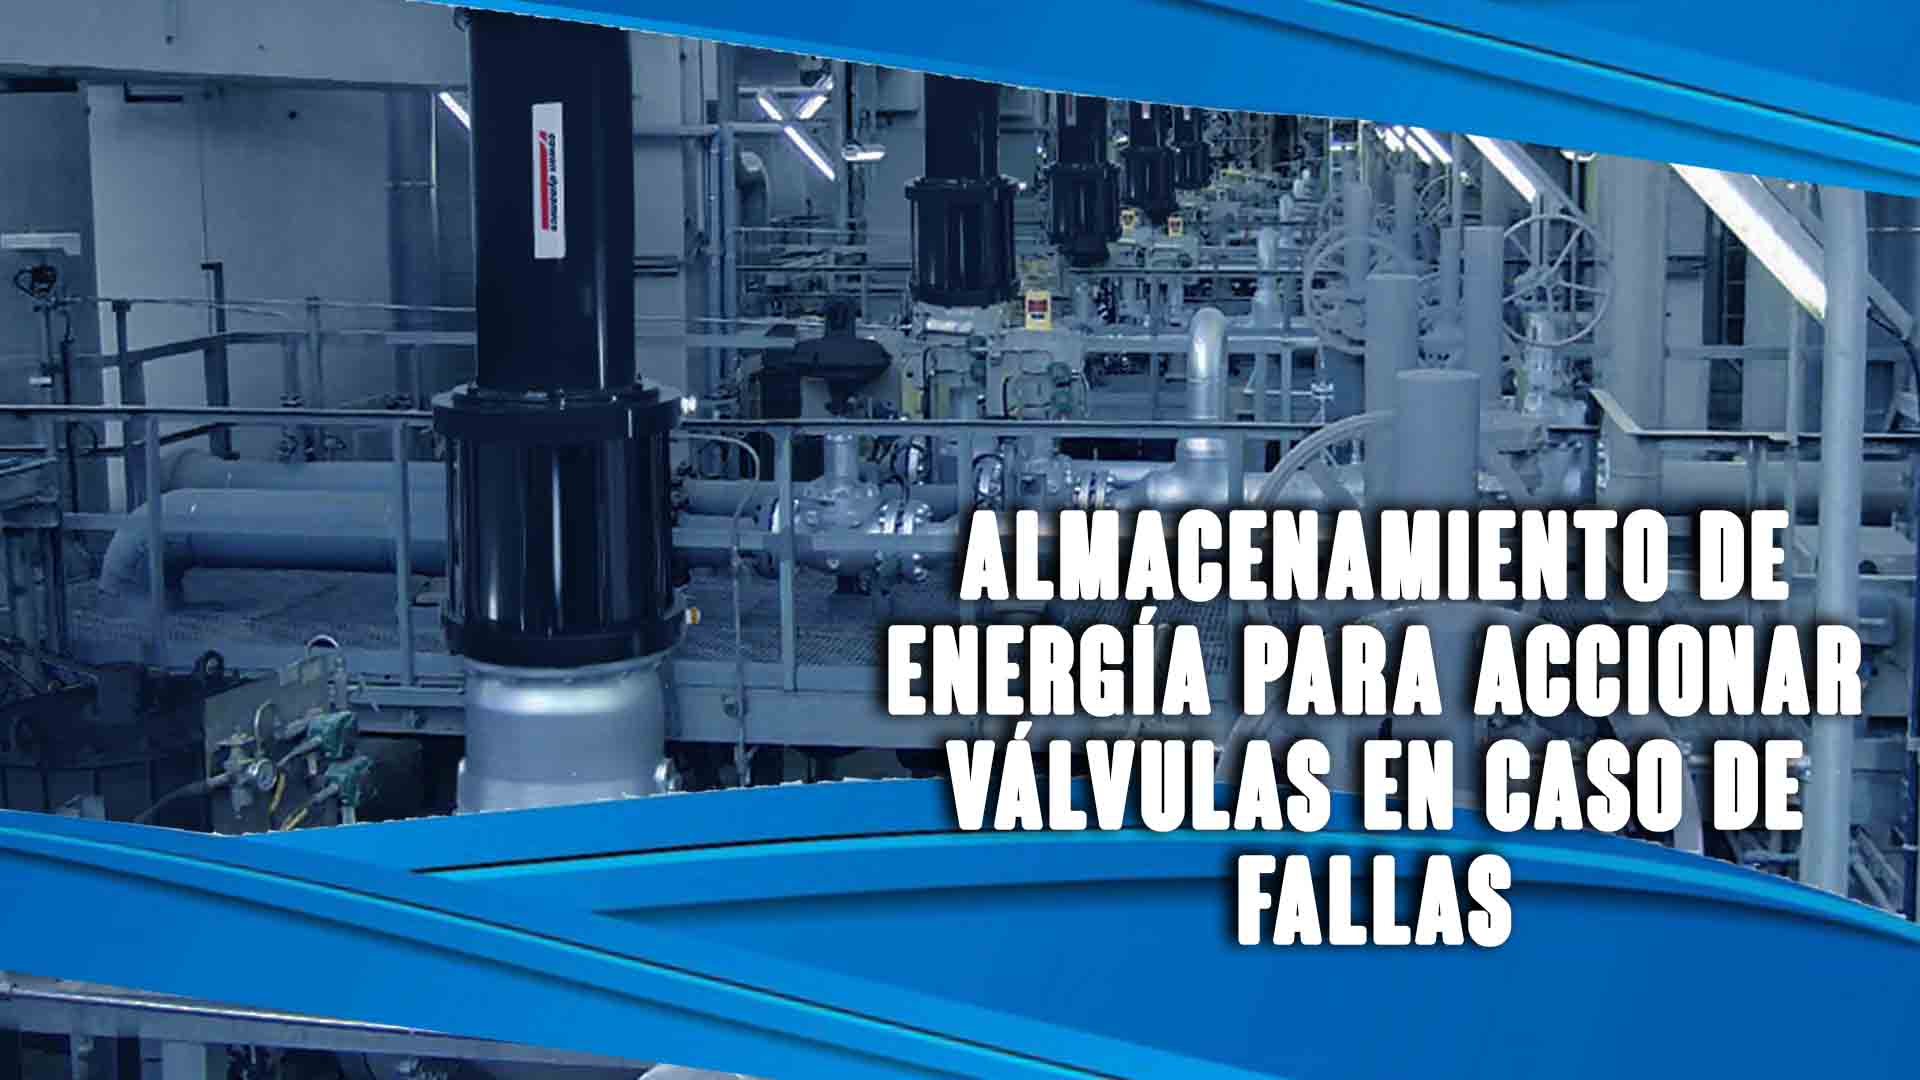 Almacenamiento de energía para accionar válvulas en caso de fallas